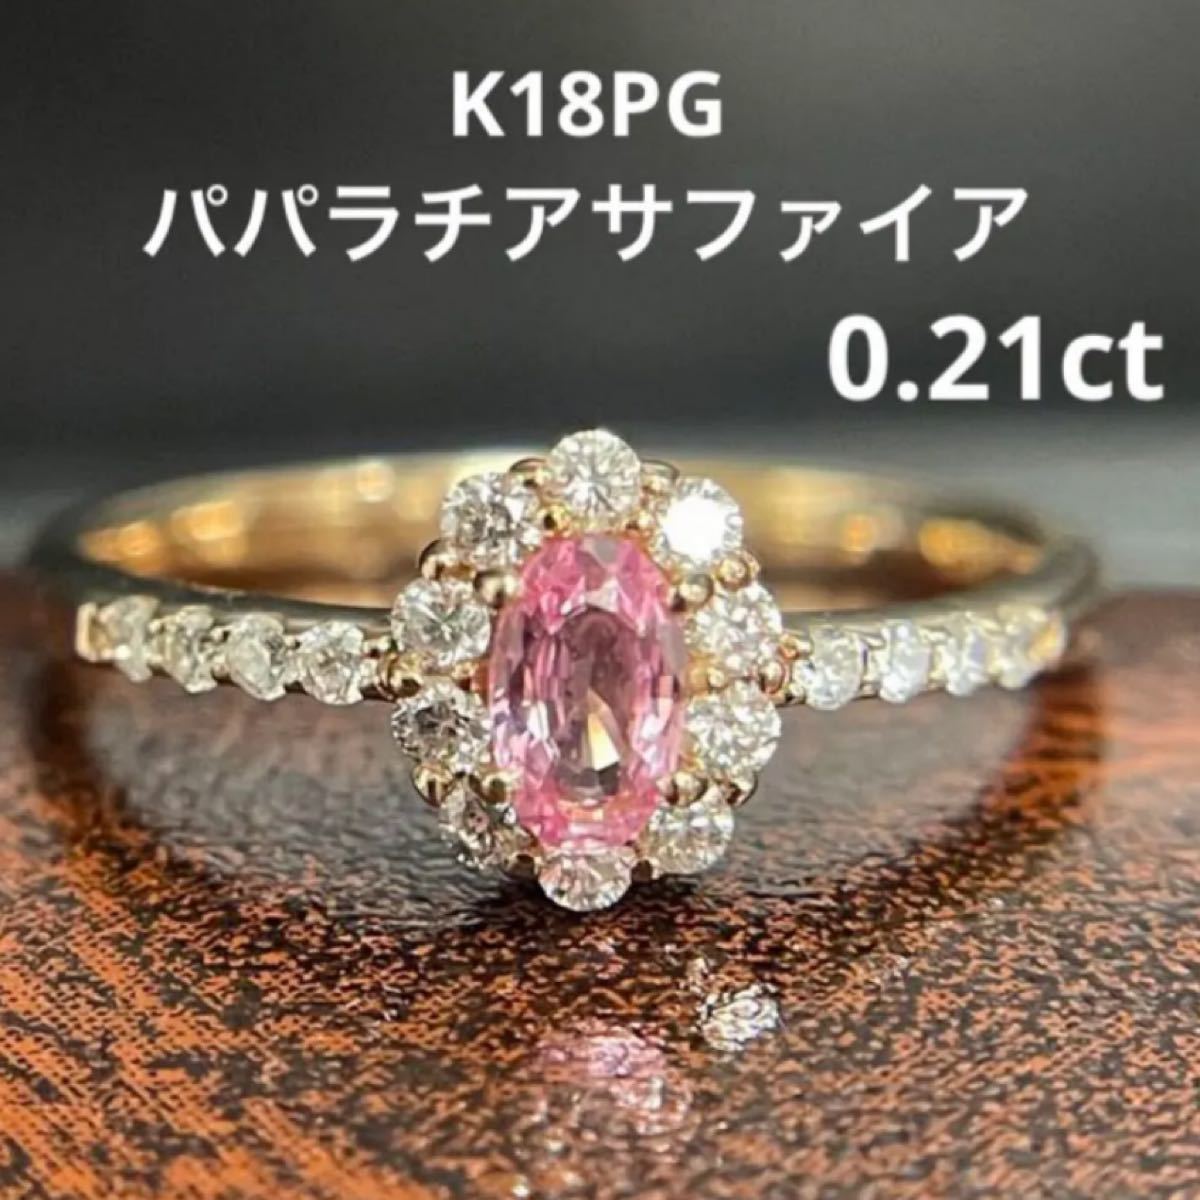 くつろぎカフェタイム K18PG ピンク サファイア ダイヤモンド リング 